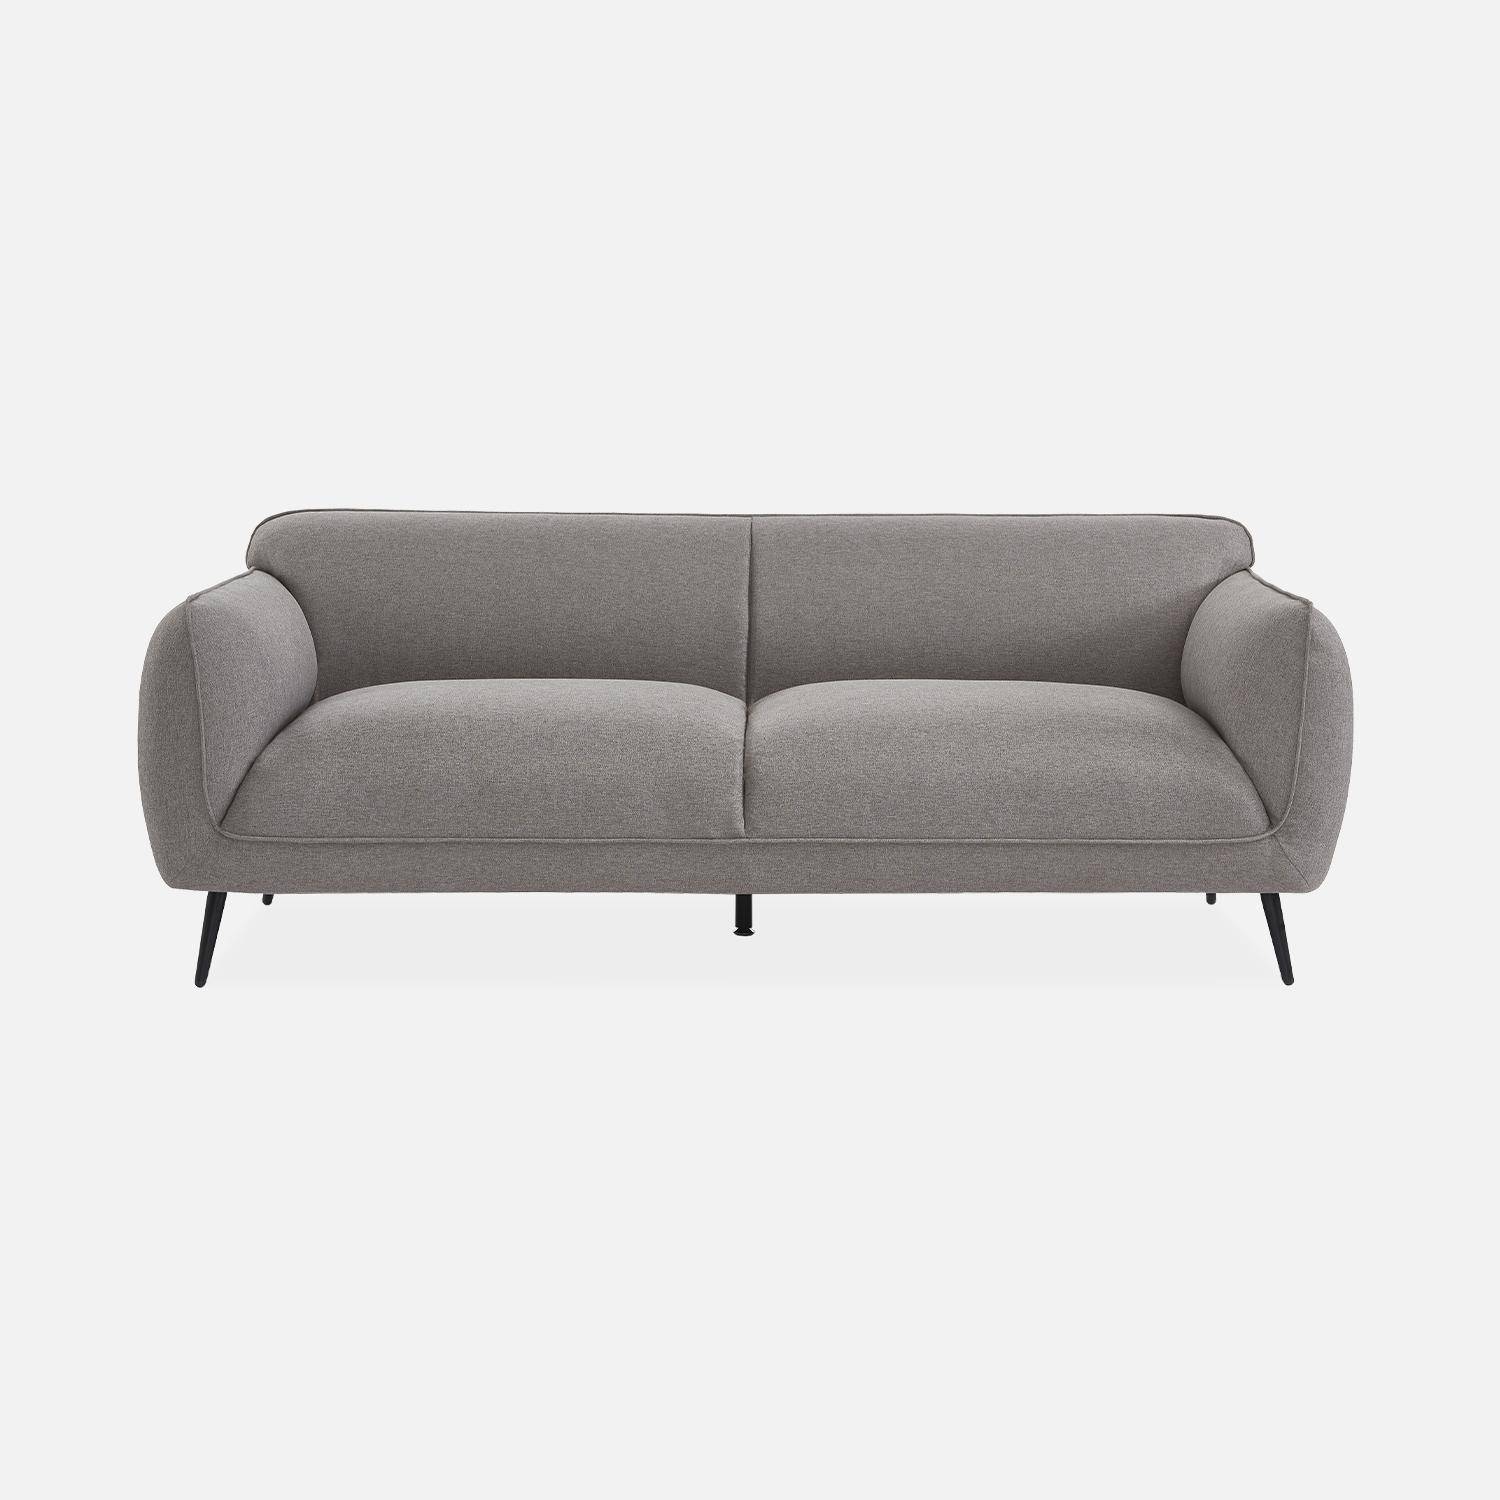 3-Sitzer-Sofa mit hellgrauem Stoffbezug und schwarzen Metallfüßen - Soft,sweeek,Photo4